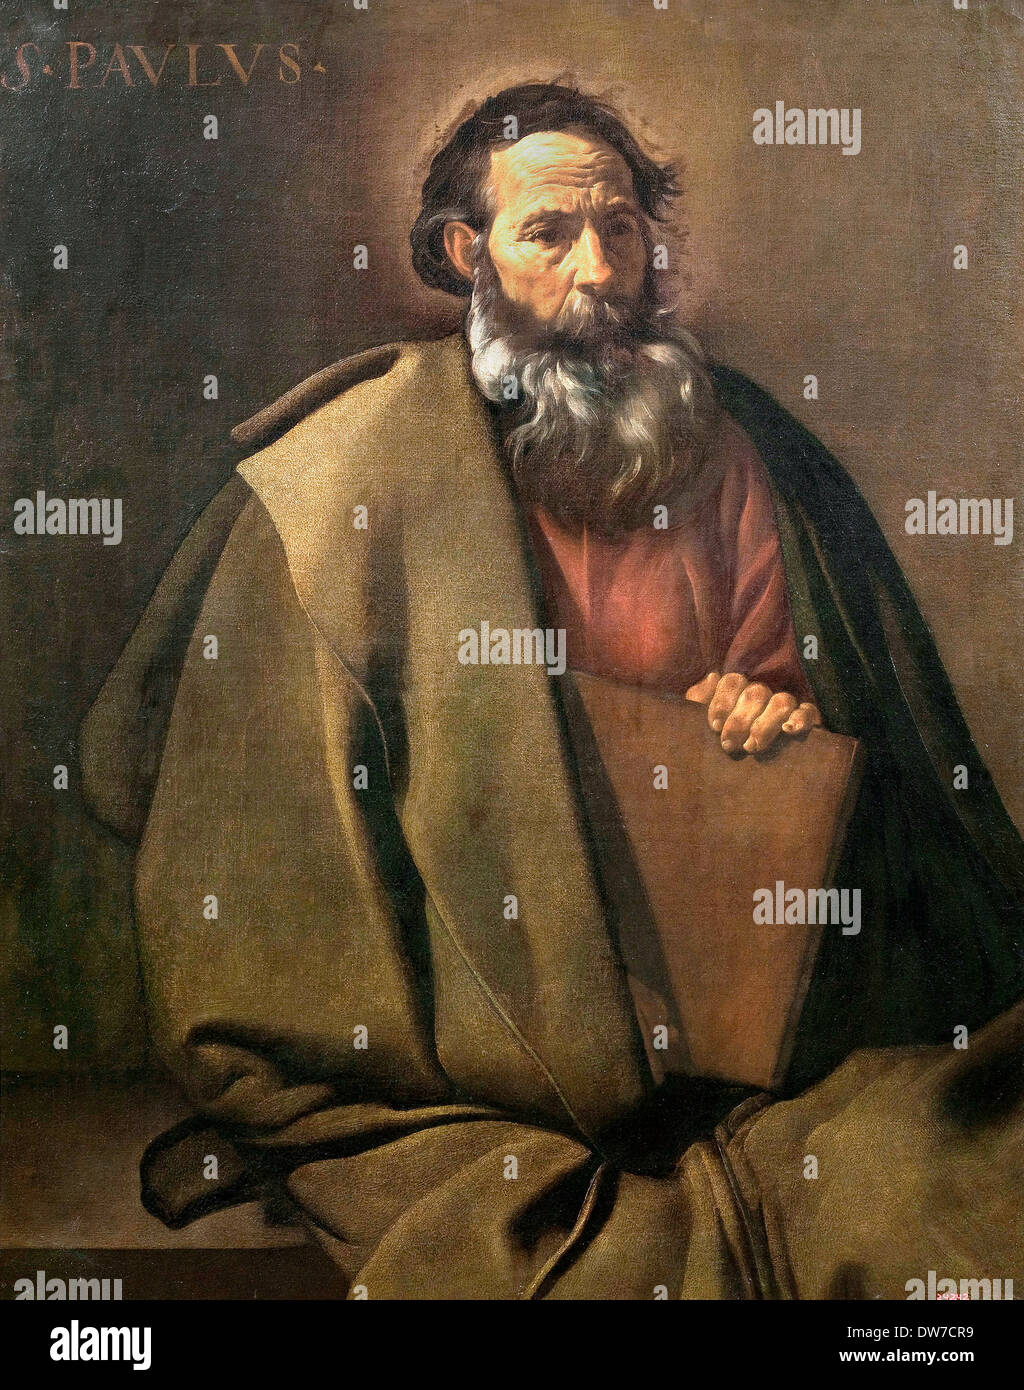 Diego Rodriguez de Silva y Velazquez, Saint Paul. Circa 1619. Oil on canvas. Museu Nacional d'Art de Catalunya, Barcelona, Spain Stock Photo